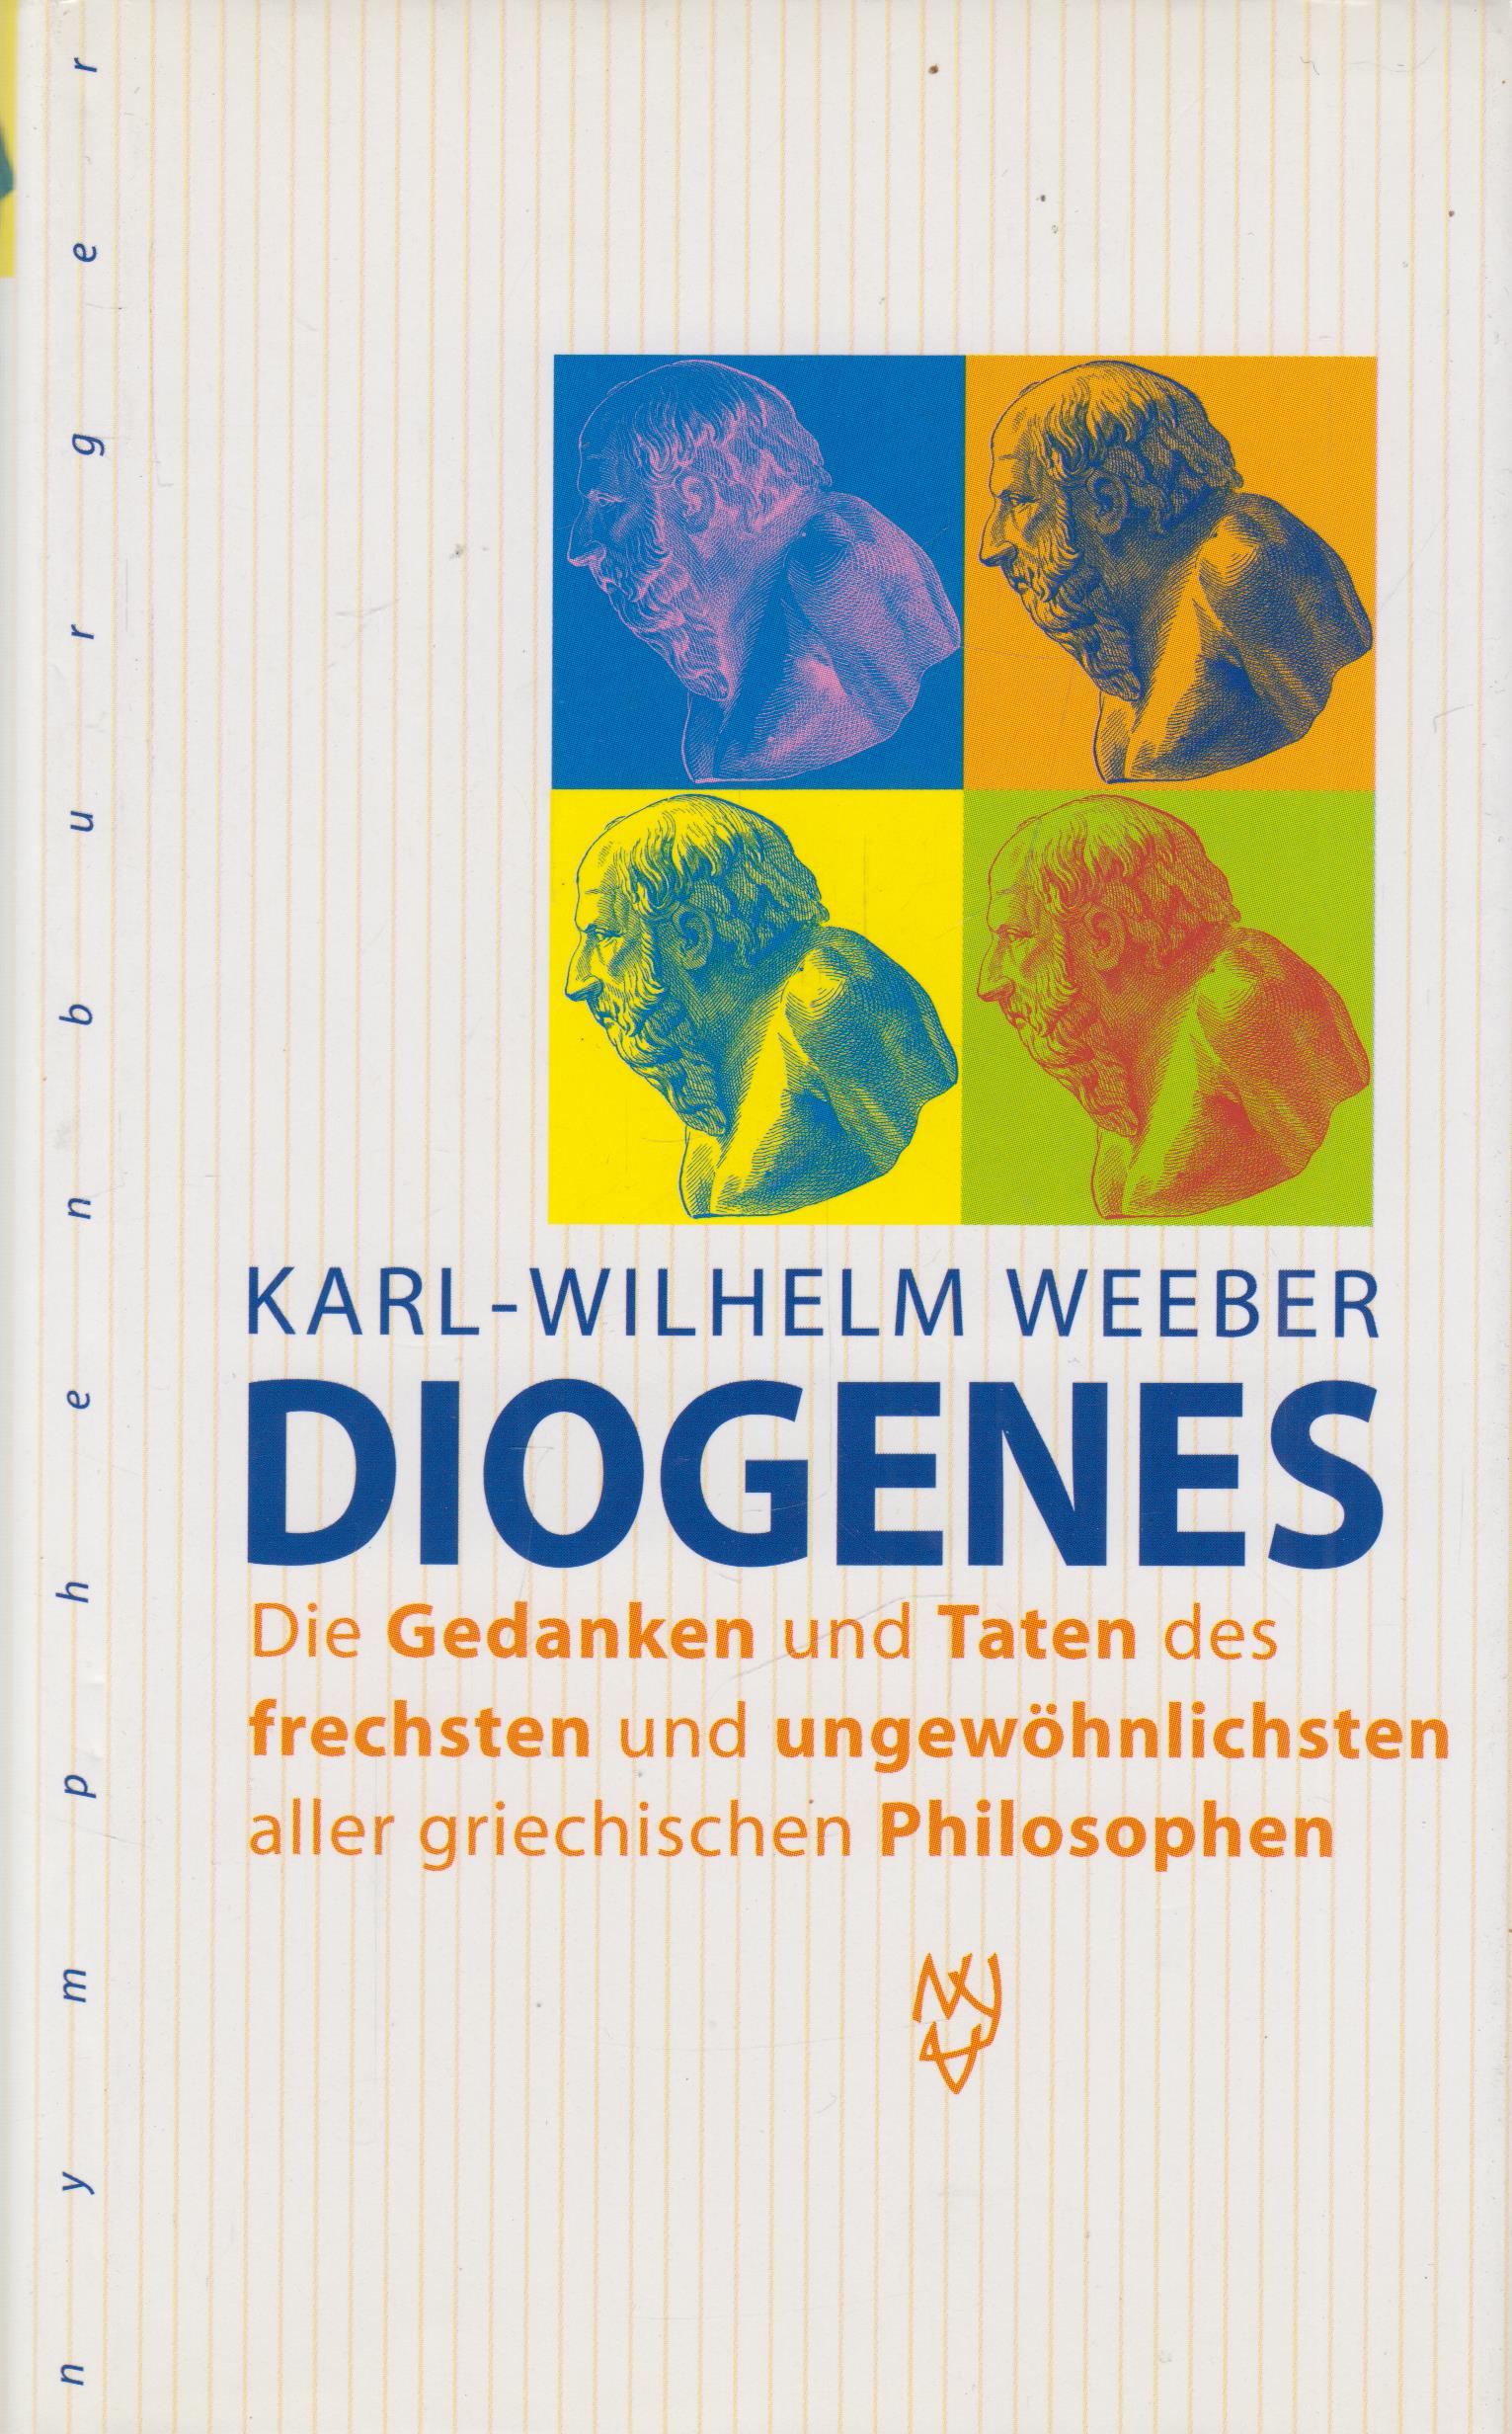 Diogenes Die Gedanken und Taten des frechsten und ungewöhnlichsten aller griechischen Philosophen - Weeber, Karl-Wilhelm